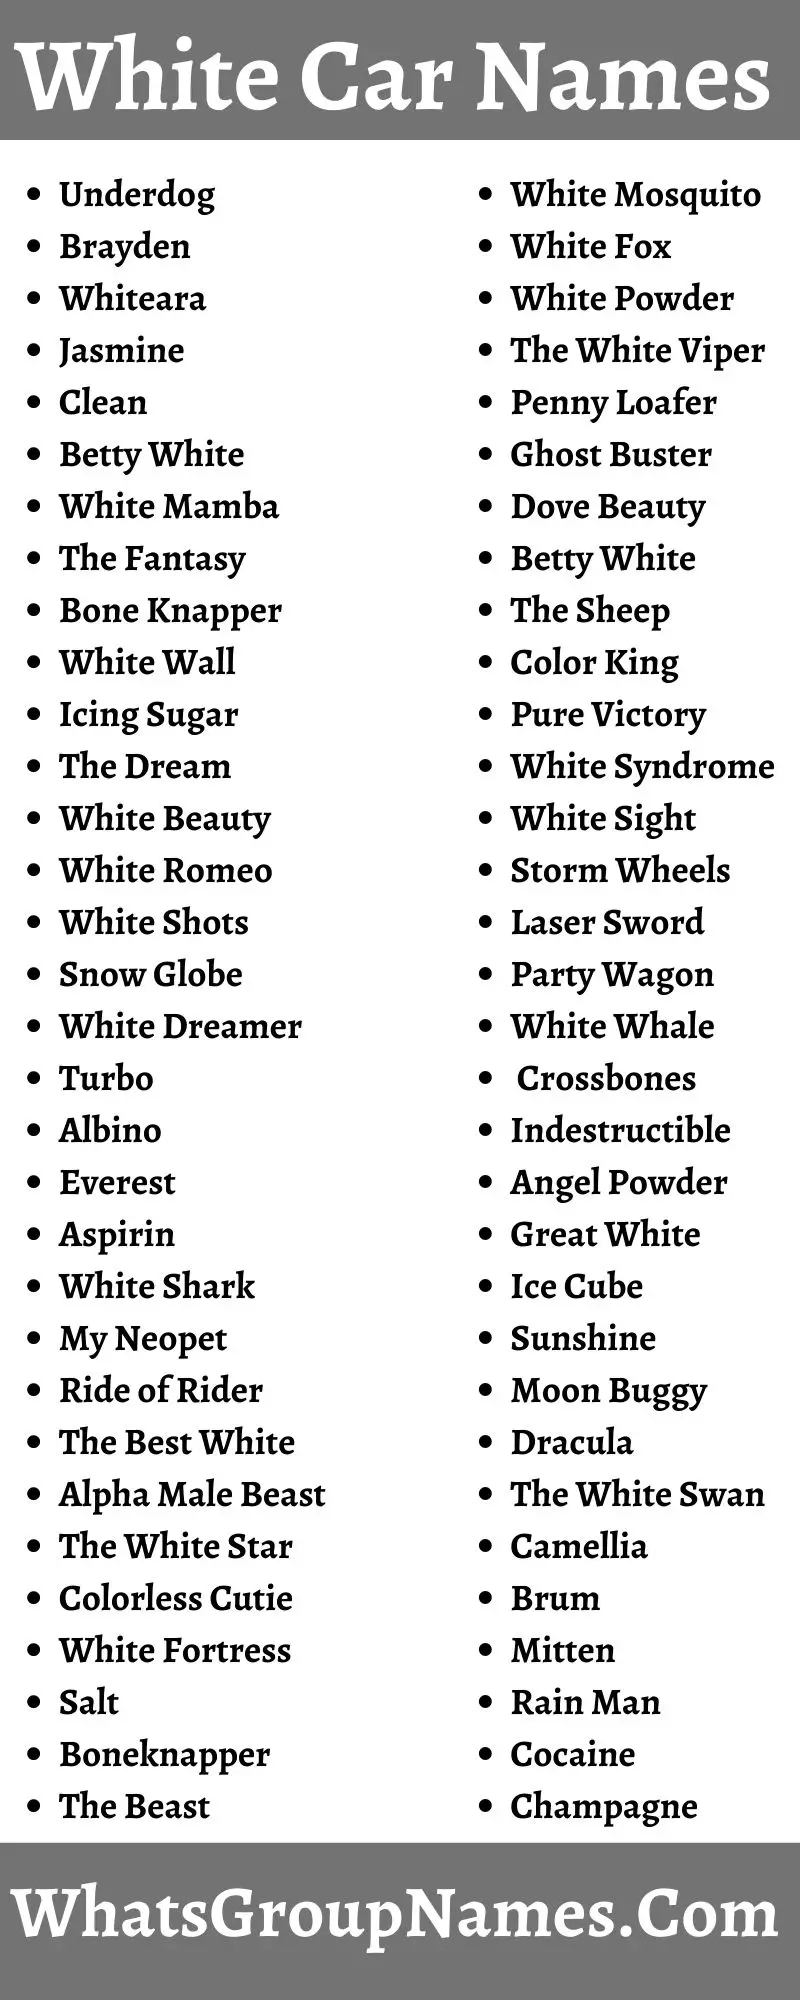 White Car Names: 400 Nicknames For White Cars